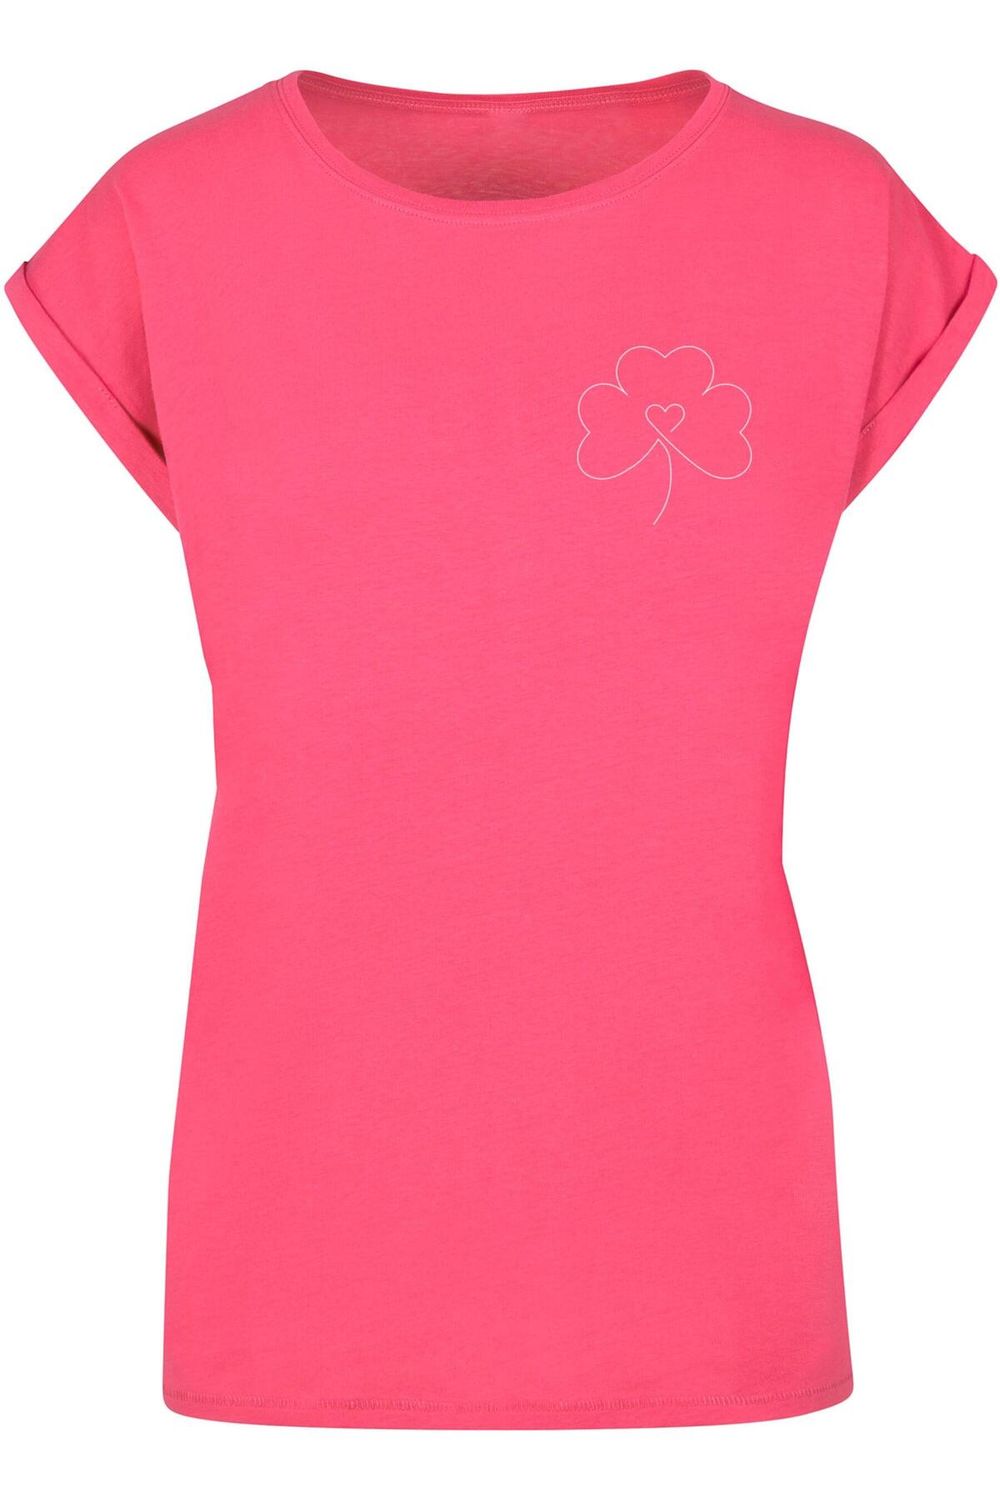 Merchcode Damen Trendyol T-Shirt Ladies - Spring Clover Flower - Leaf